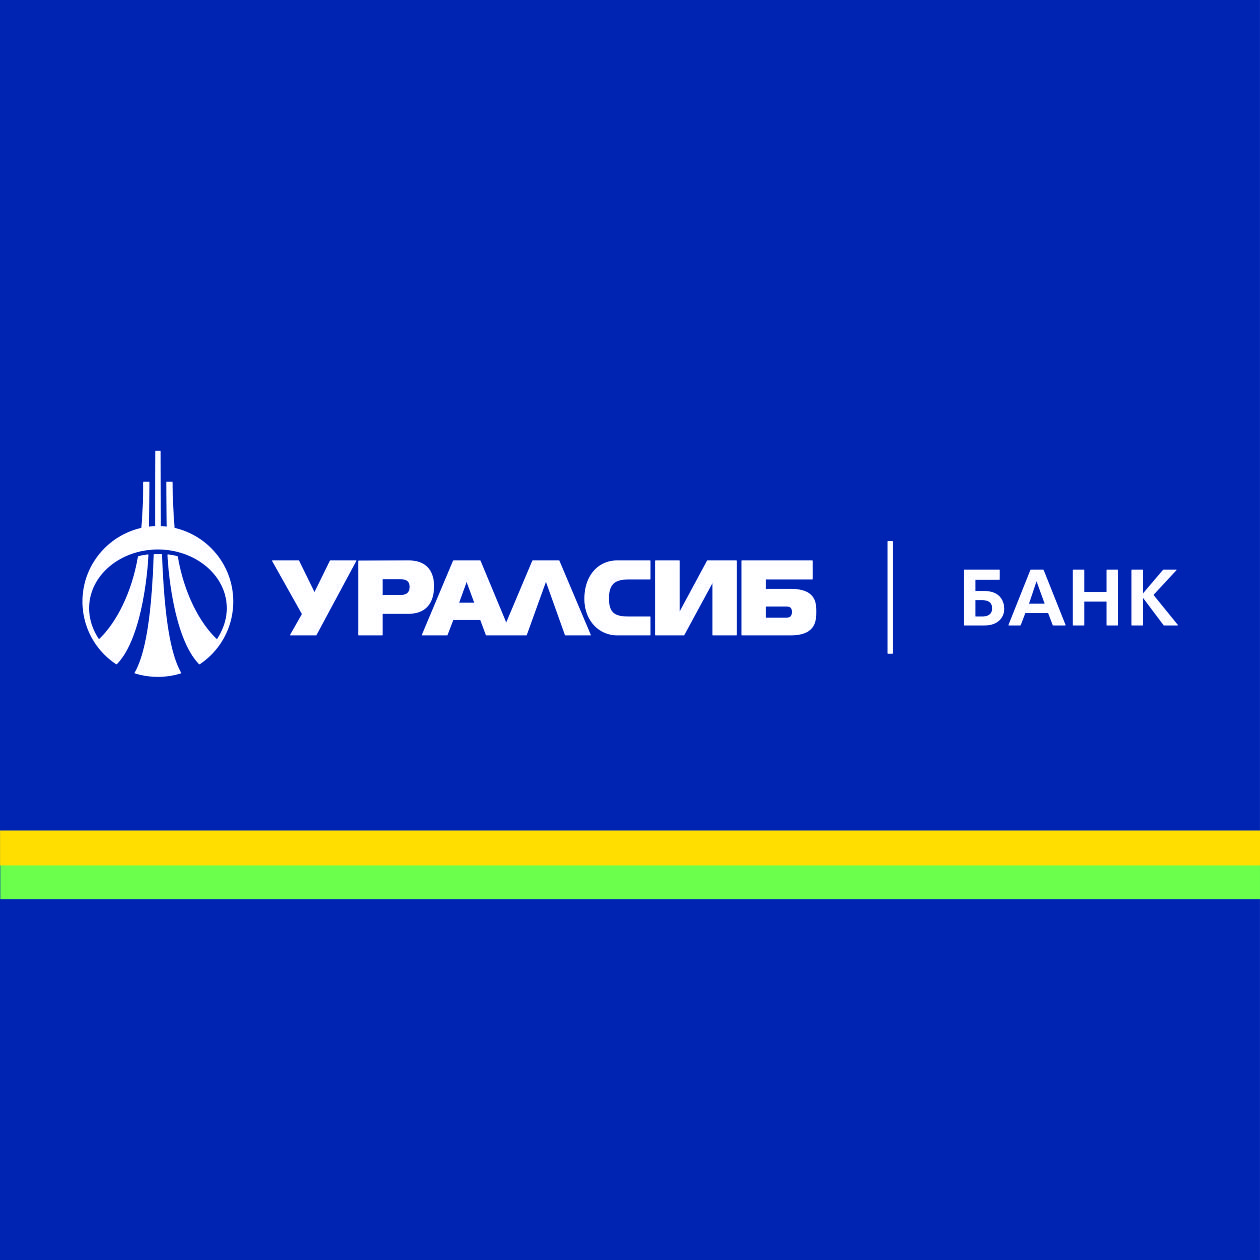 Банк УРАЛСИБ запустил карту «Прибыль» во всех отделениях